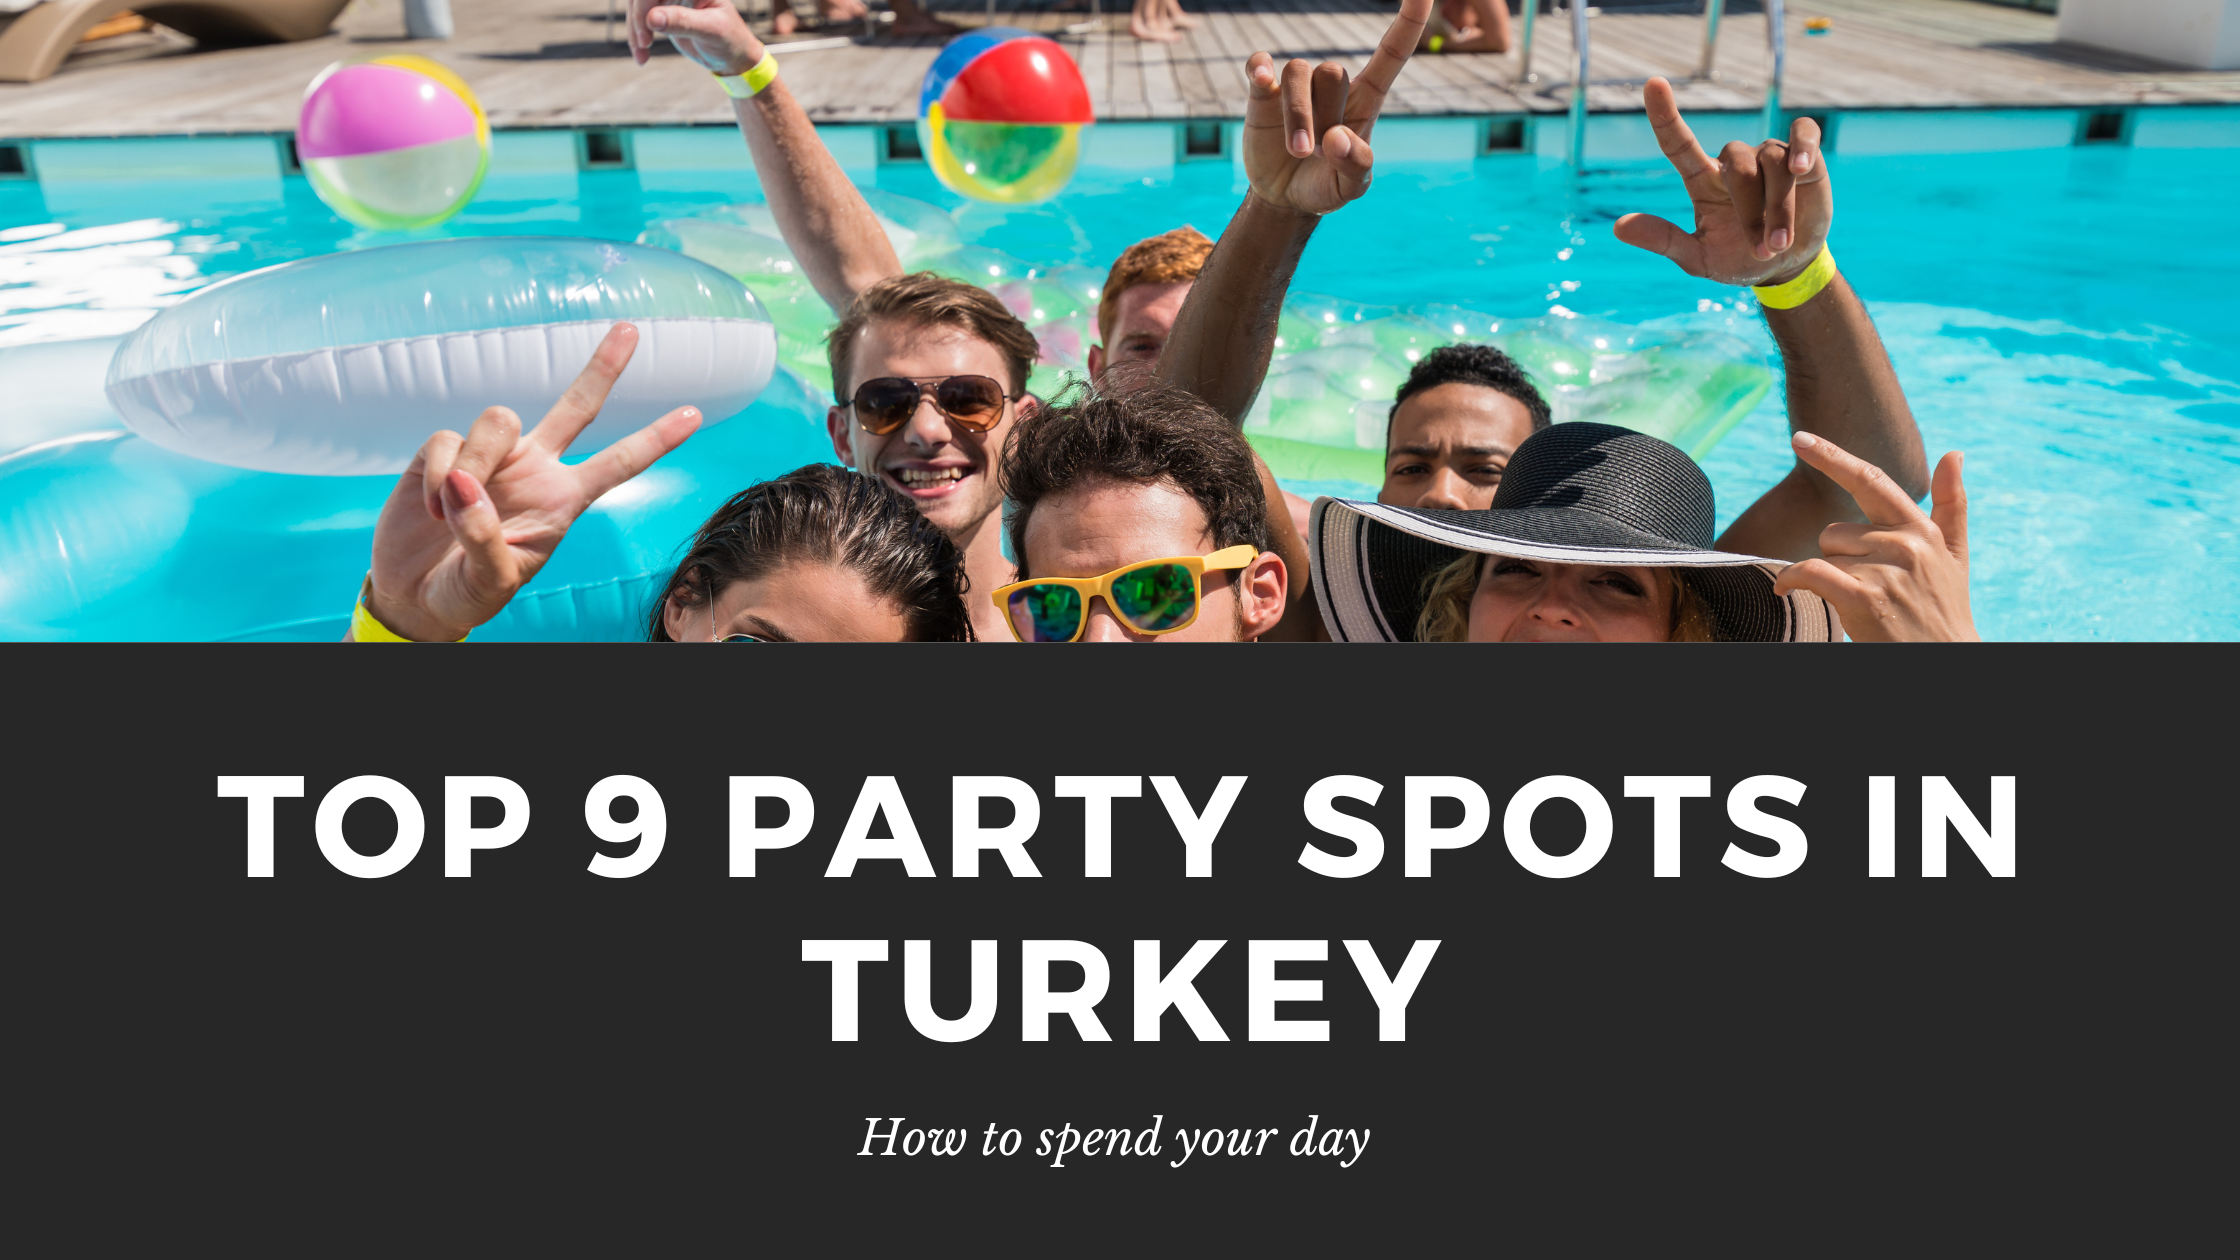 Top 9 Party Spots In Turkey